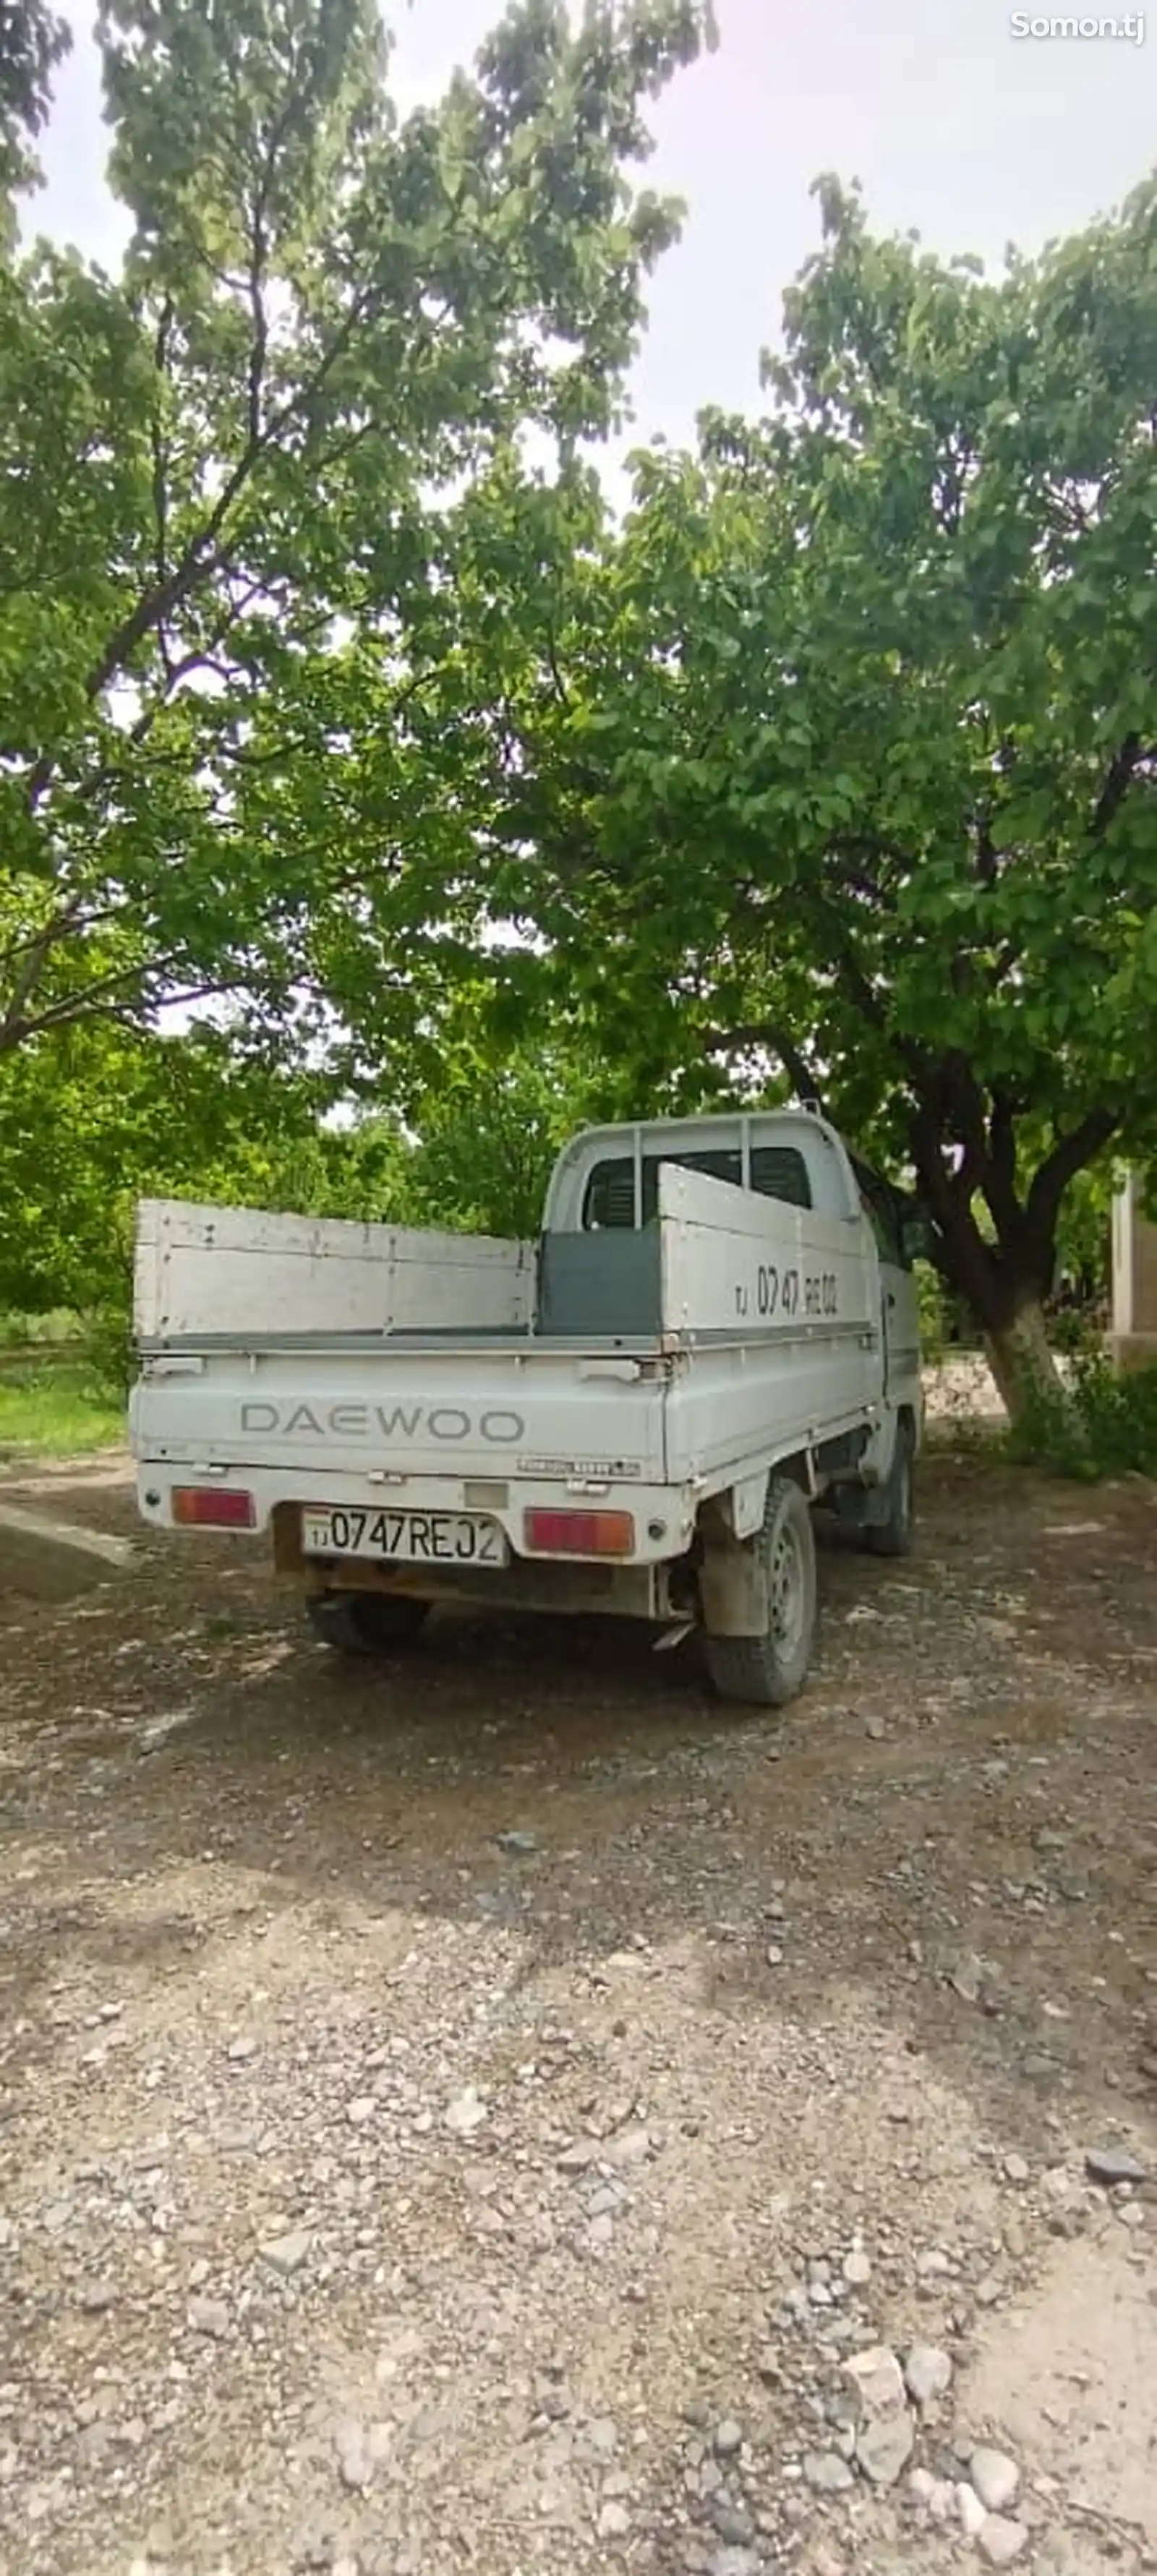 Бортовой автомобиль Daewoo Labo, 2001-2